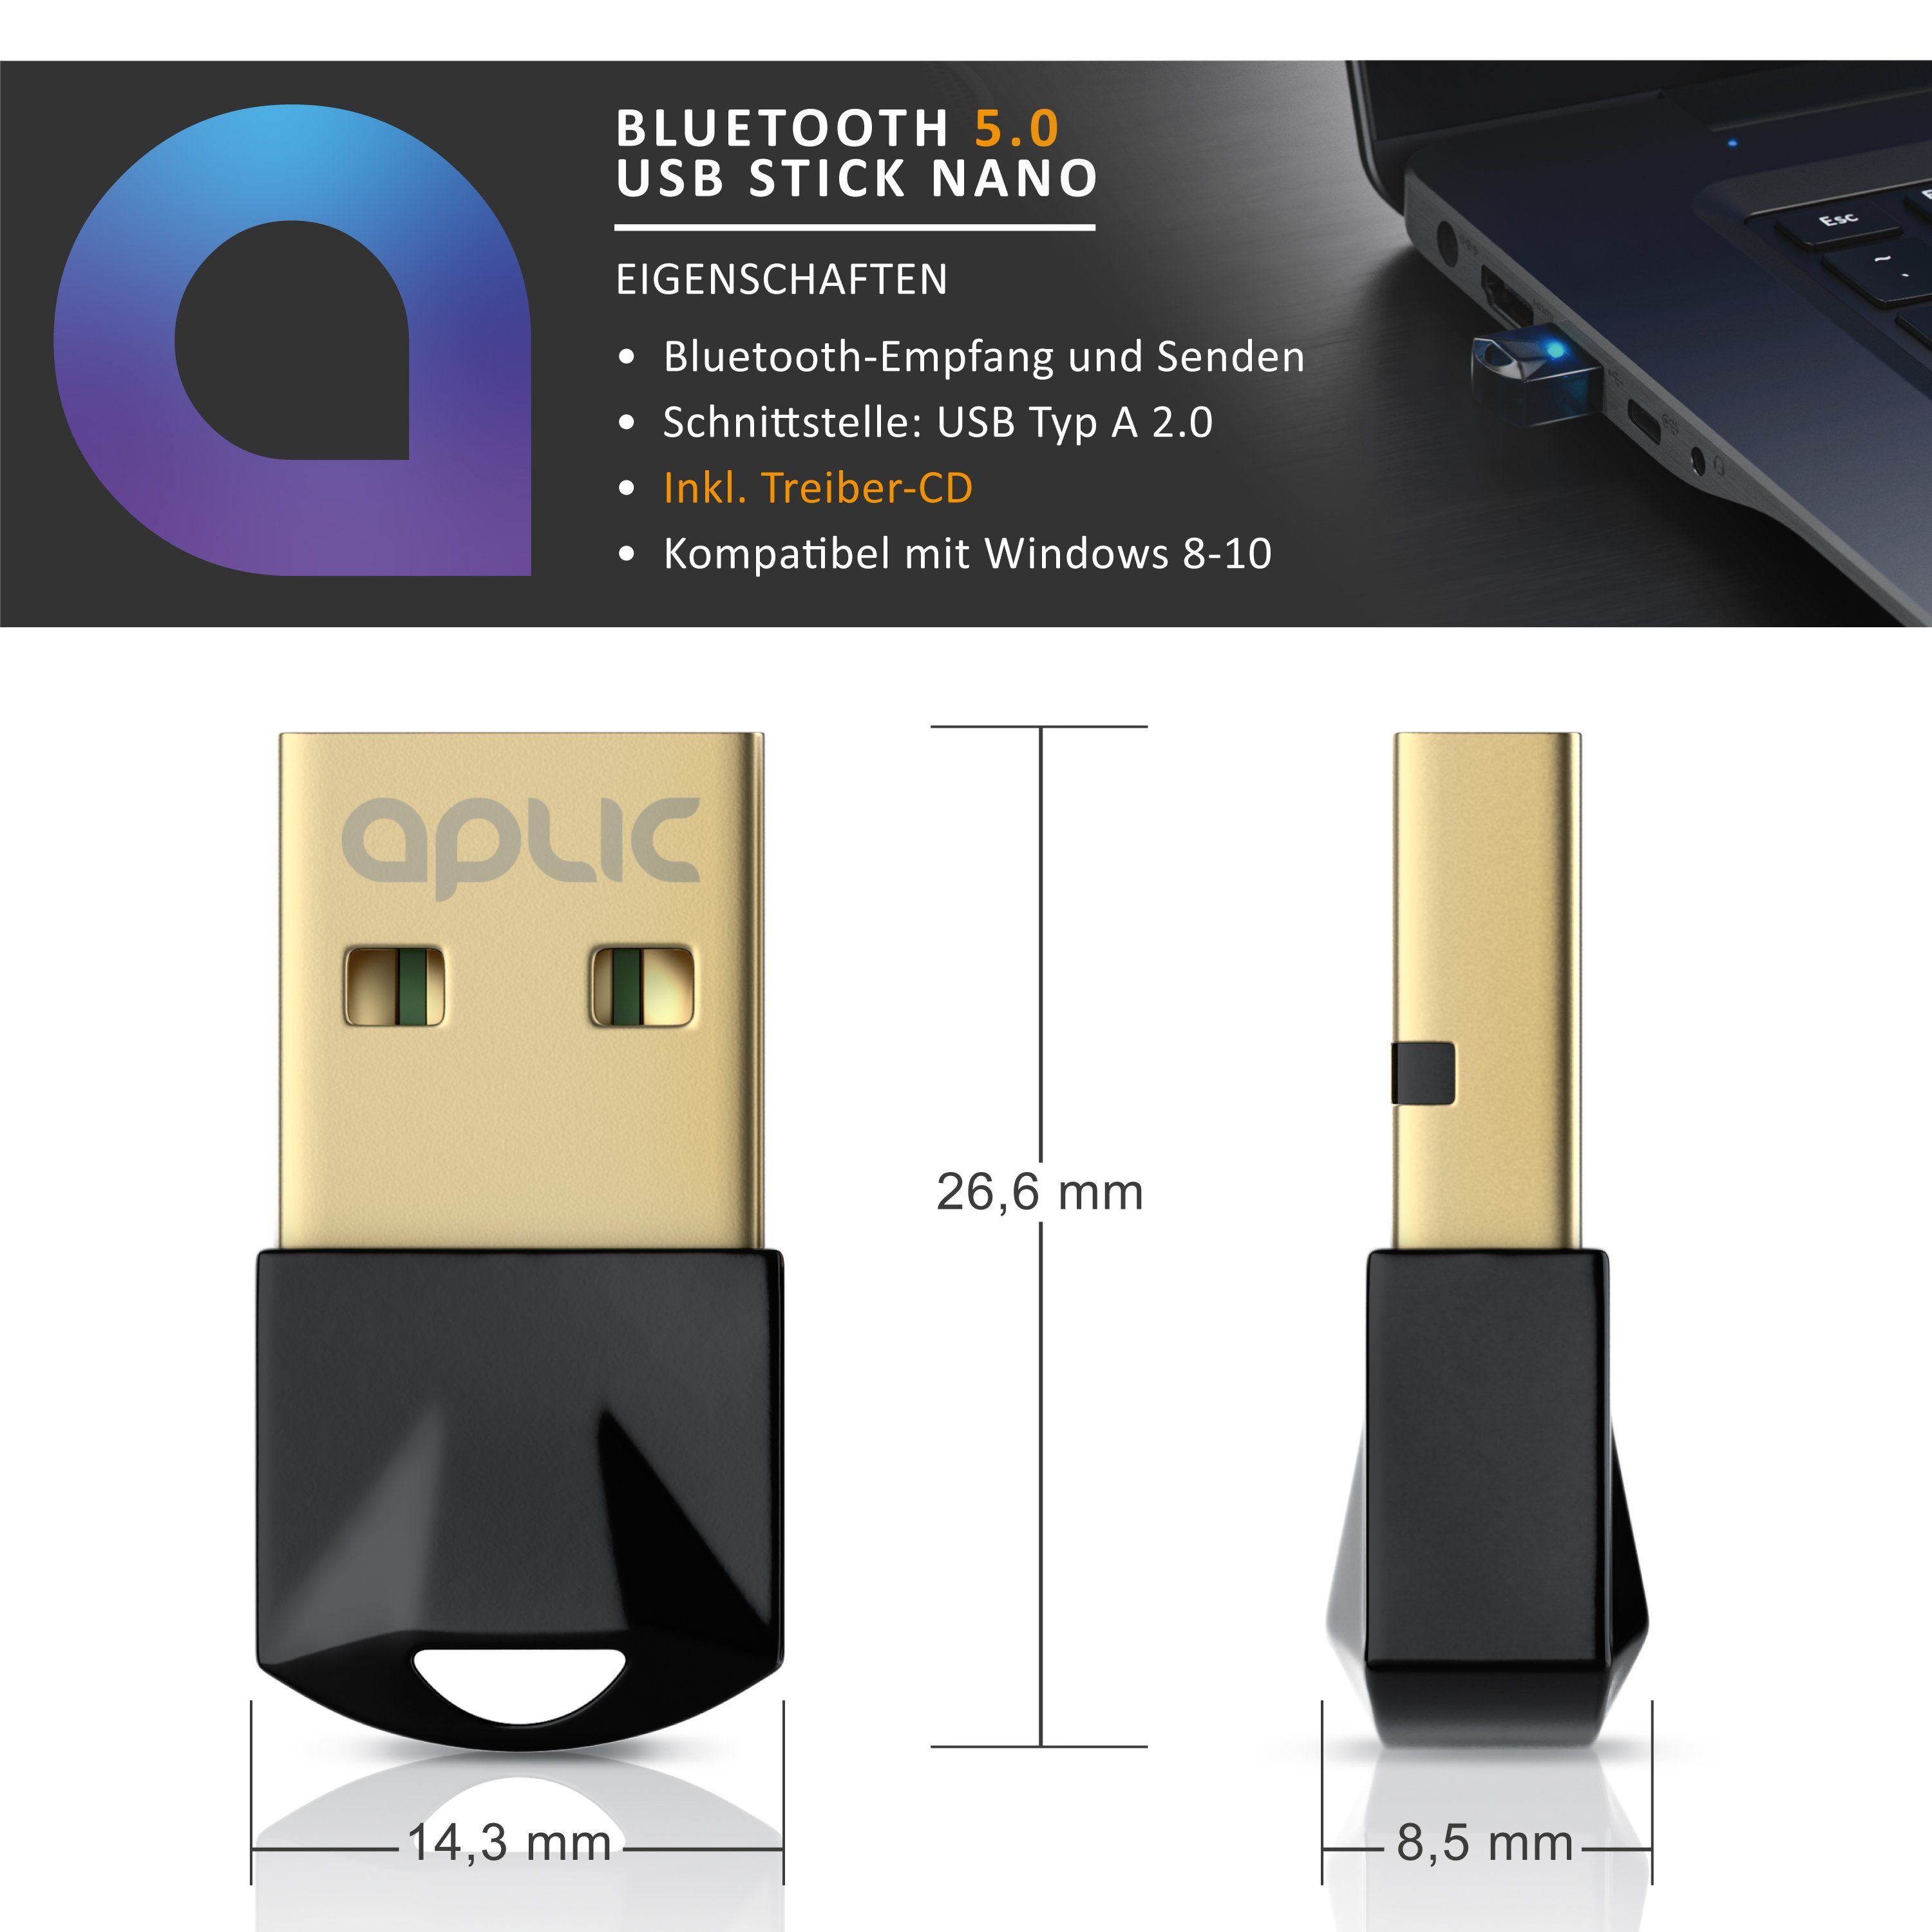 für PC Laptop Headset Mäuse 3 Mbit/s CSL Lautsprecher Wireless Dongle Sender und Empfänger Bluetooth Kopfhörer BT V5.0 Adapter Windows 8 10 Tastaturen USB Bluetooth 5.0 Stick Mini 